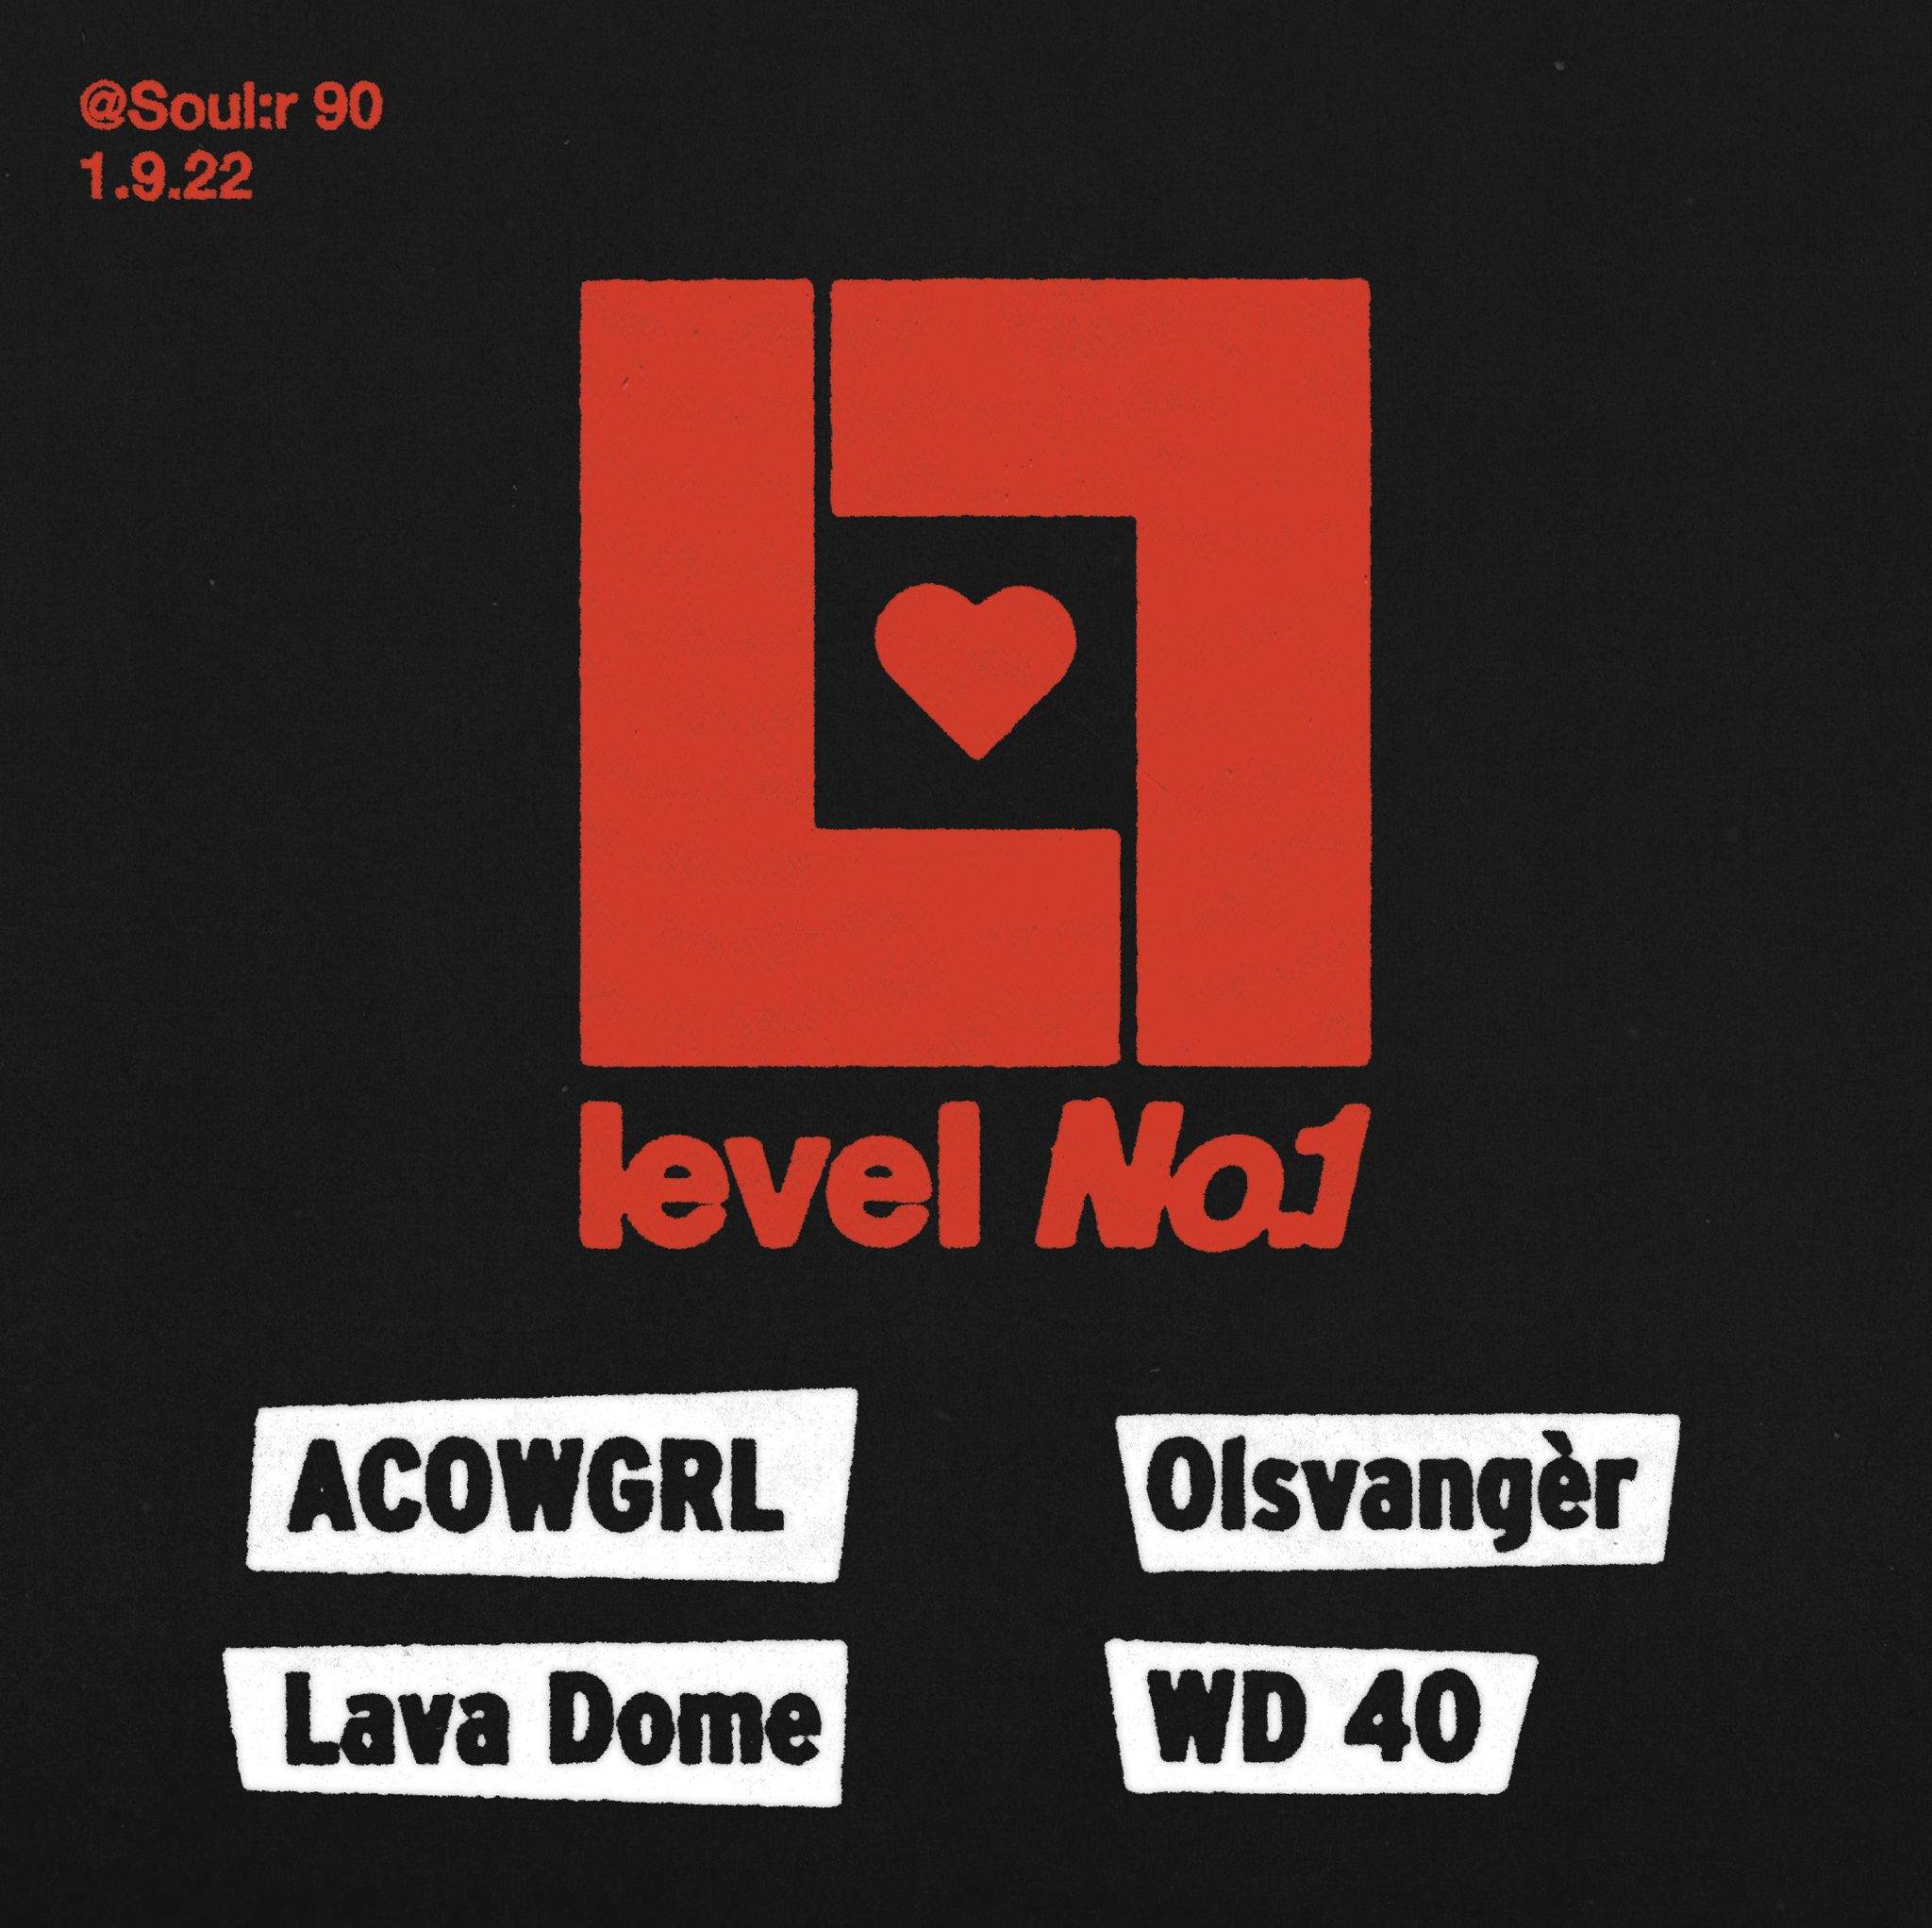 Level no.1 - Página frontal